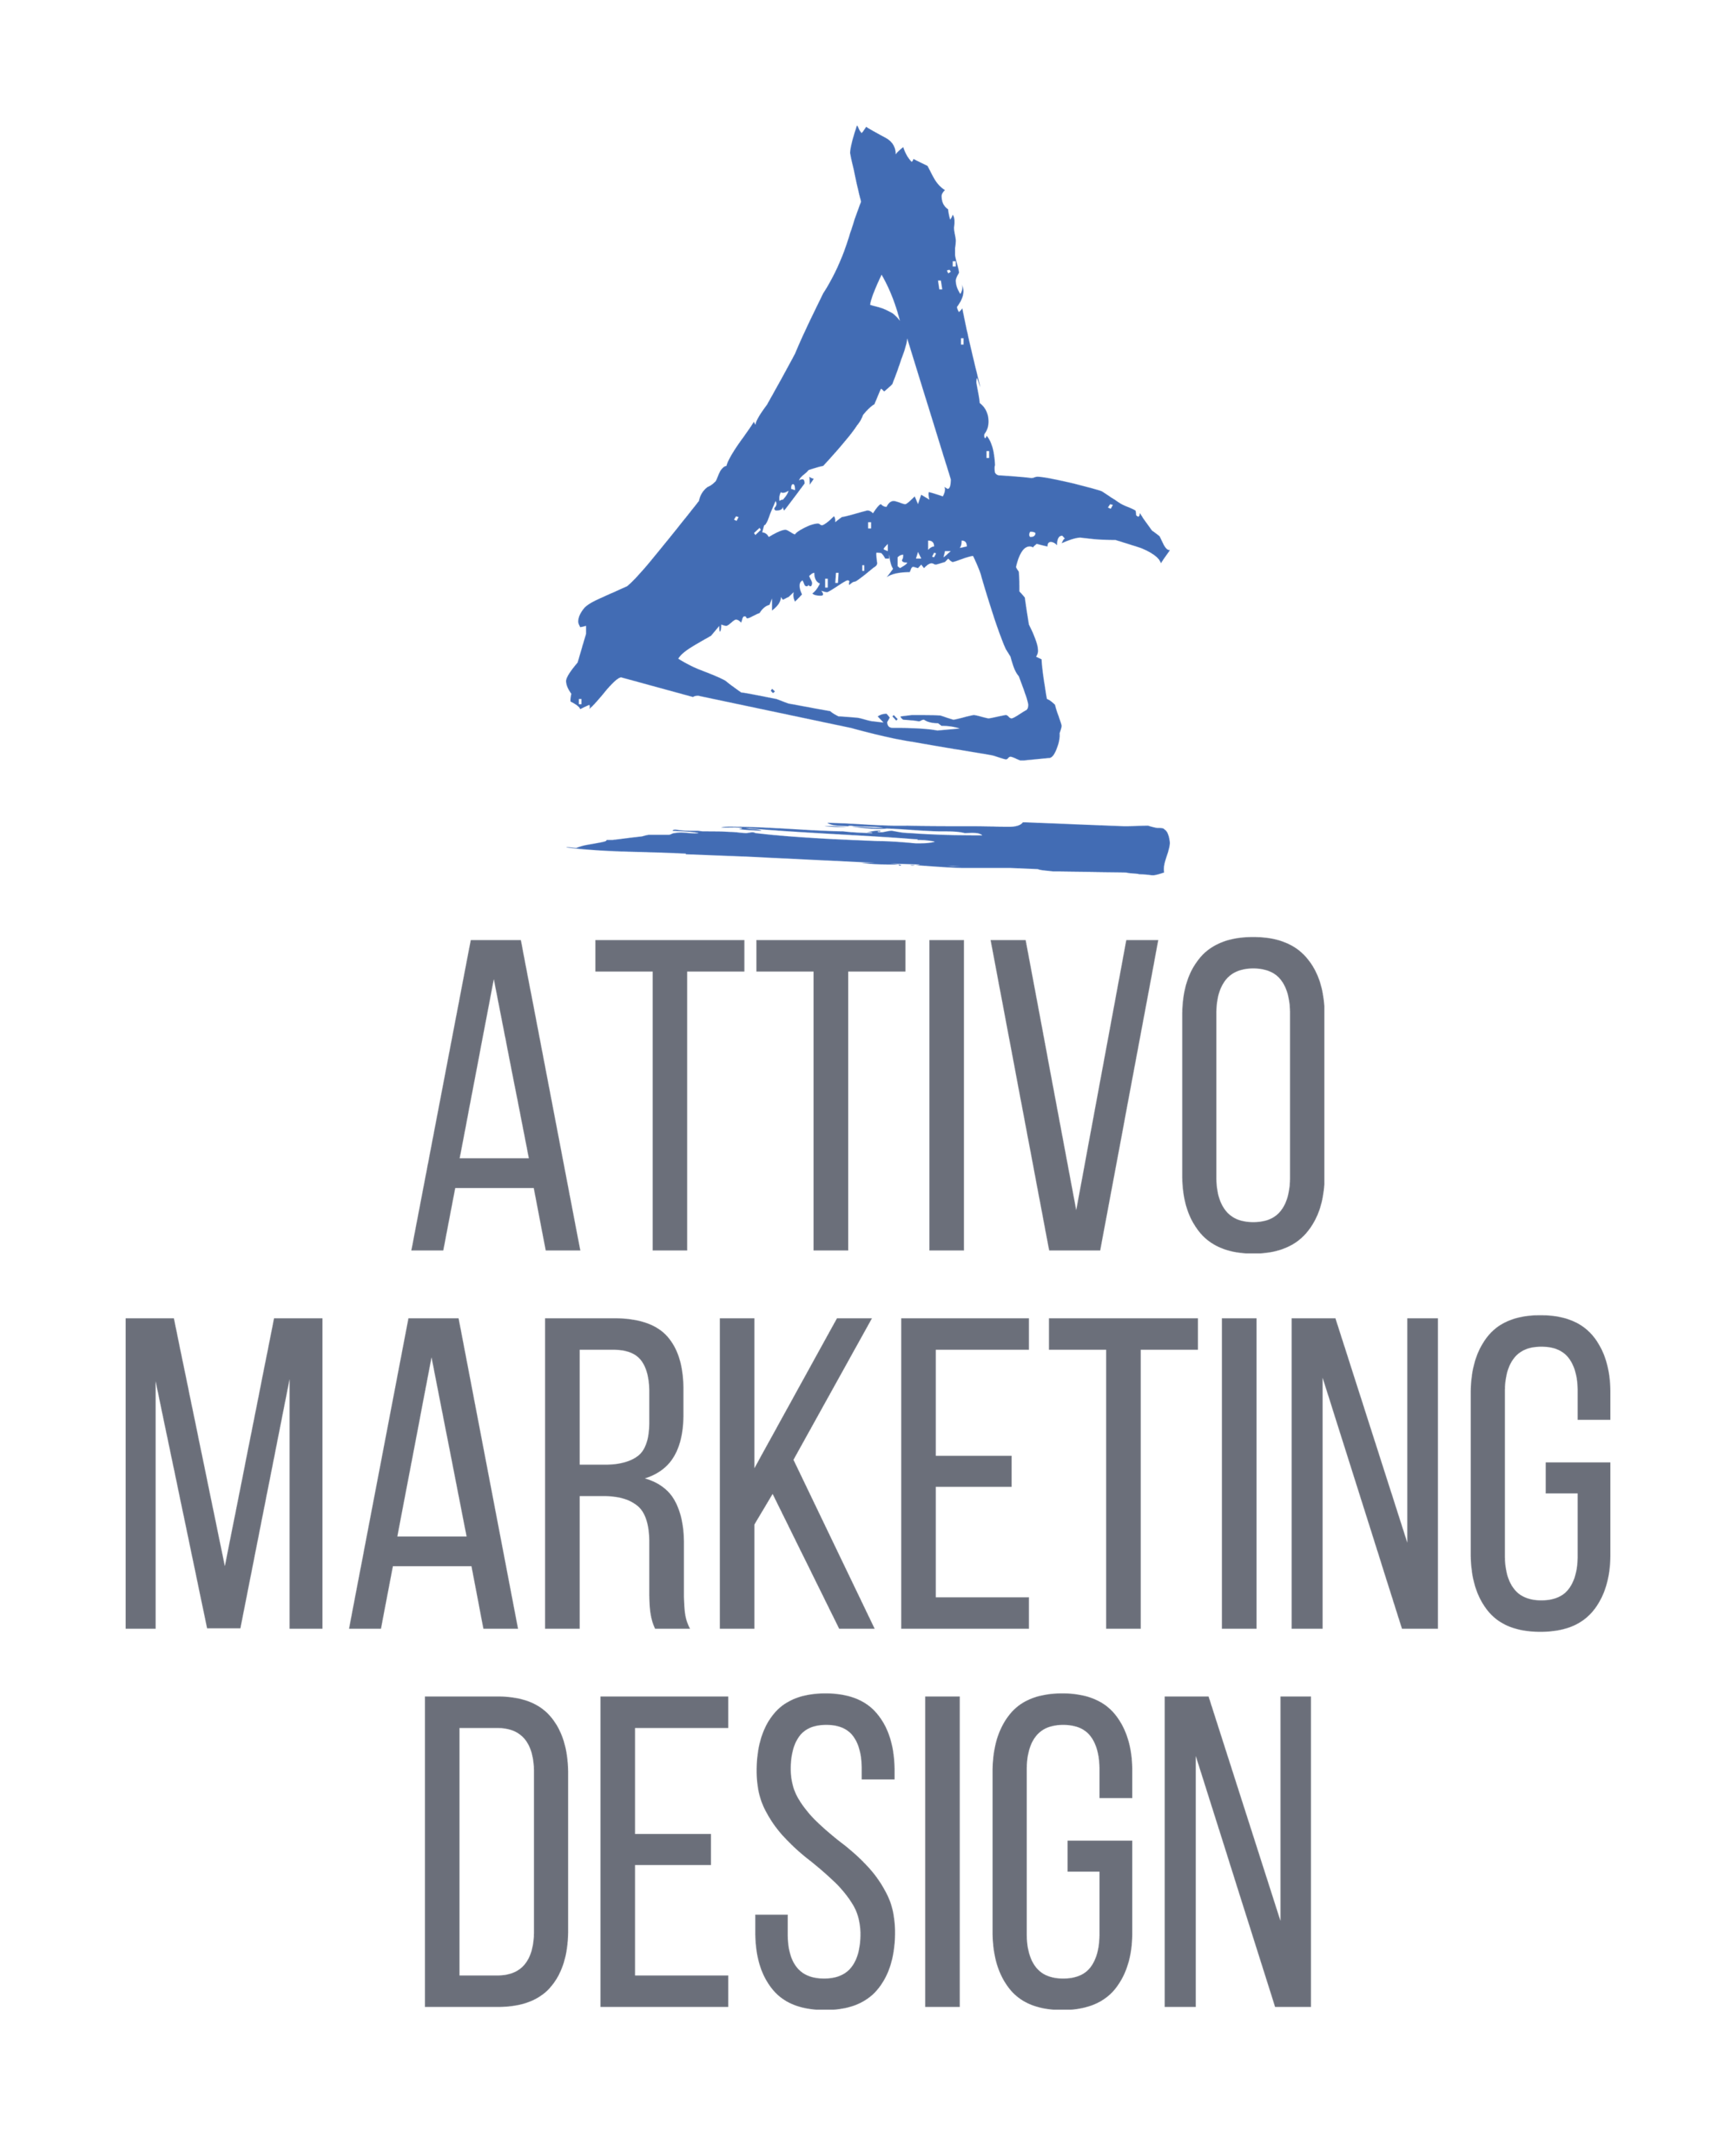 Attivo Marketing Design